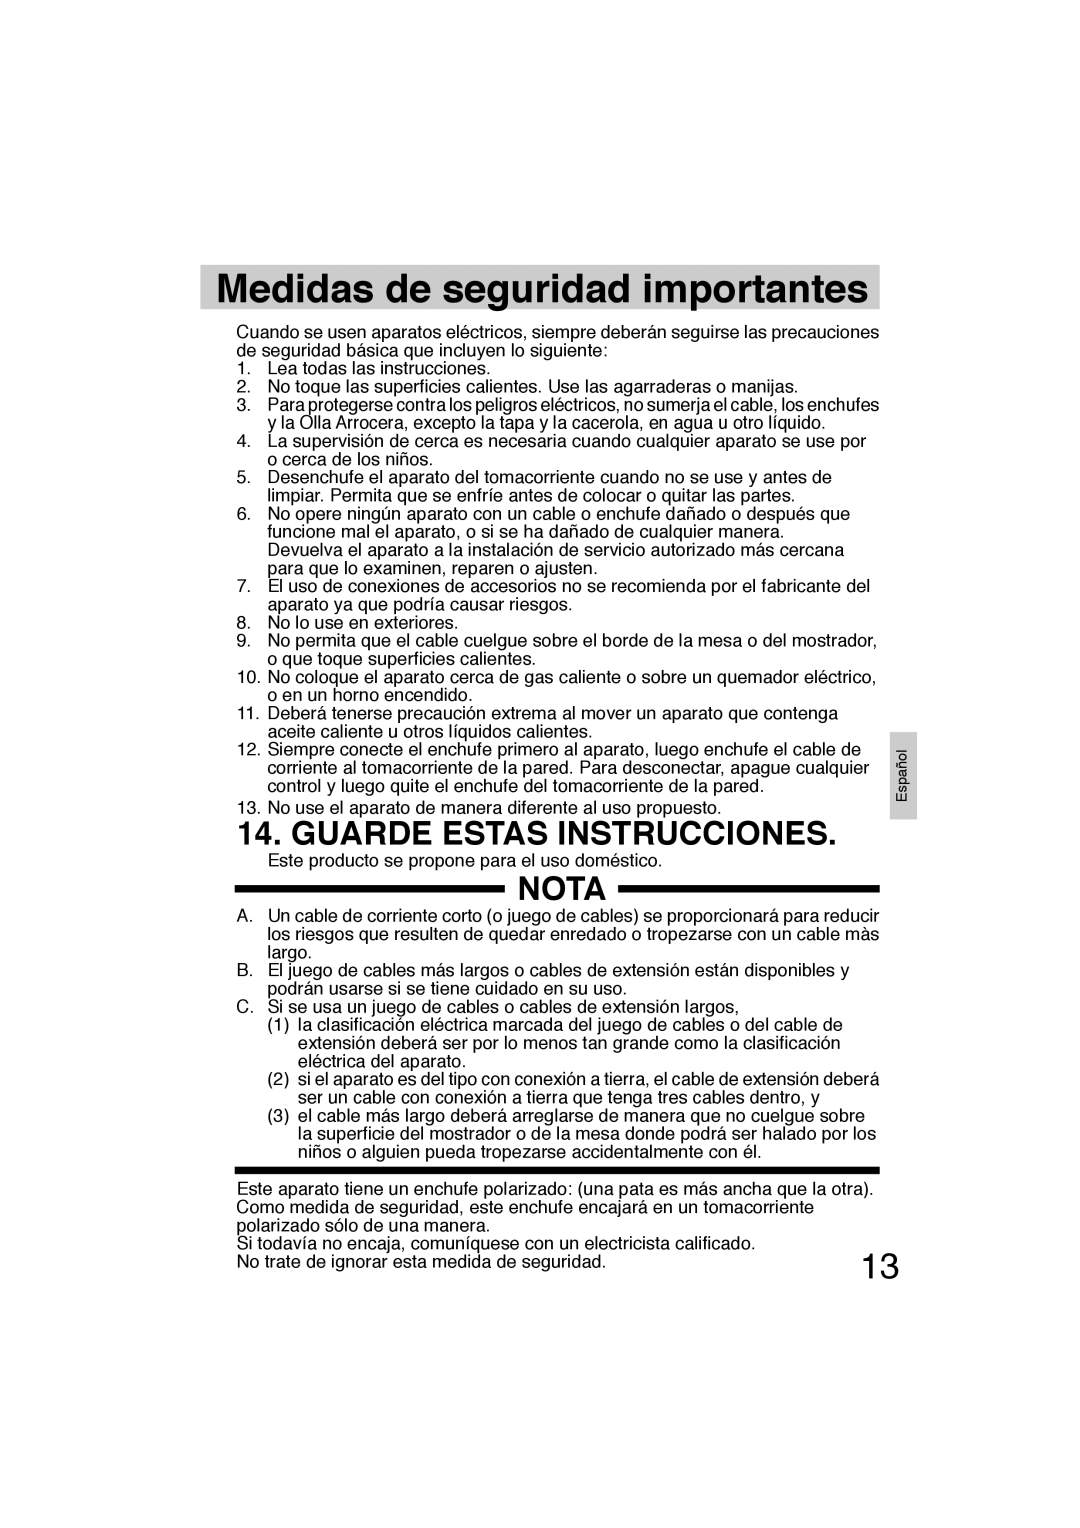 Panasonic SR-TEL18 manual Medidas de seguridad importantes, Guarde Estas Instrucciones, Nota 